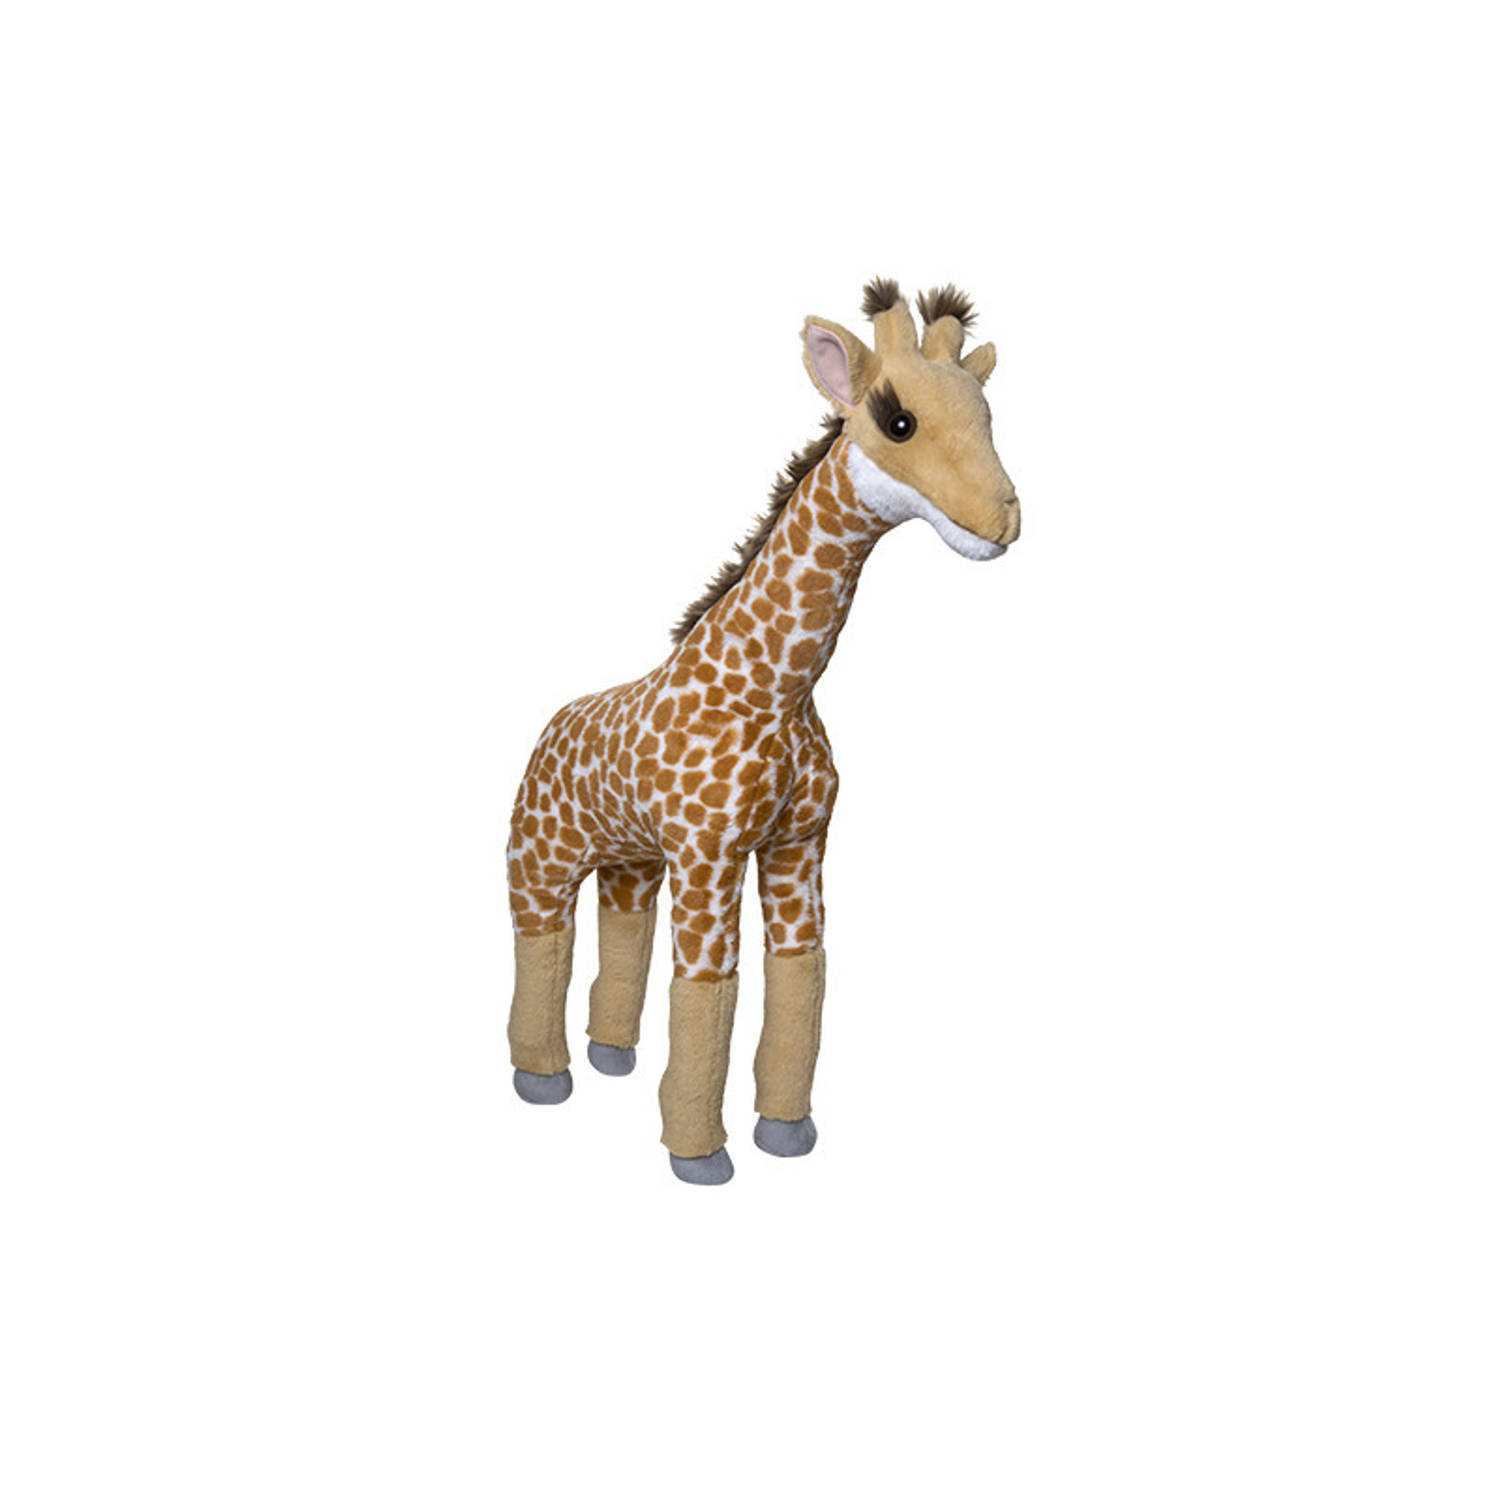 Groot pluche Giraffe knuffeldier van 65 cm - Speelgoed knuffels cadeau voor kinderen